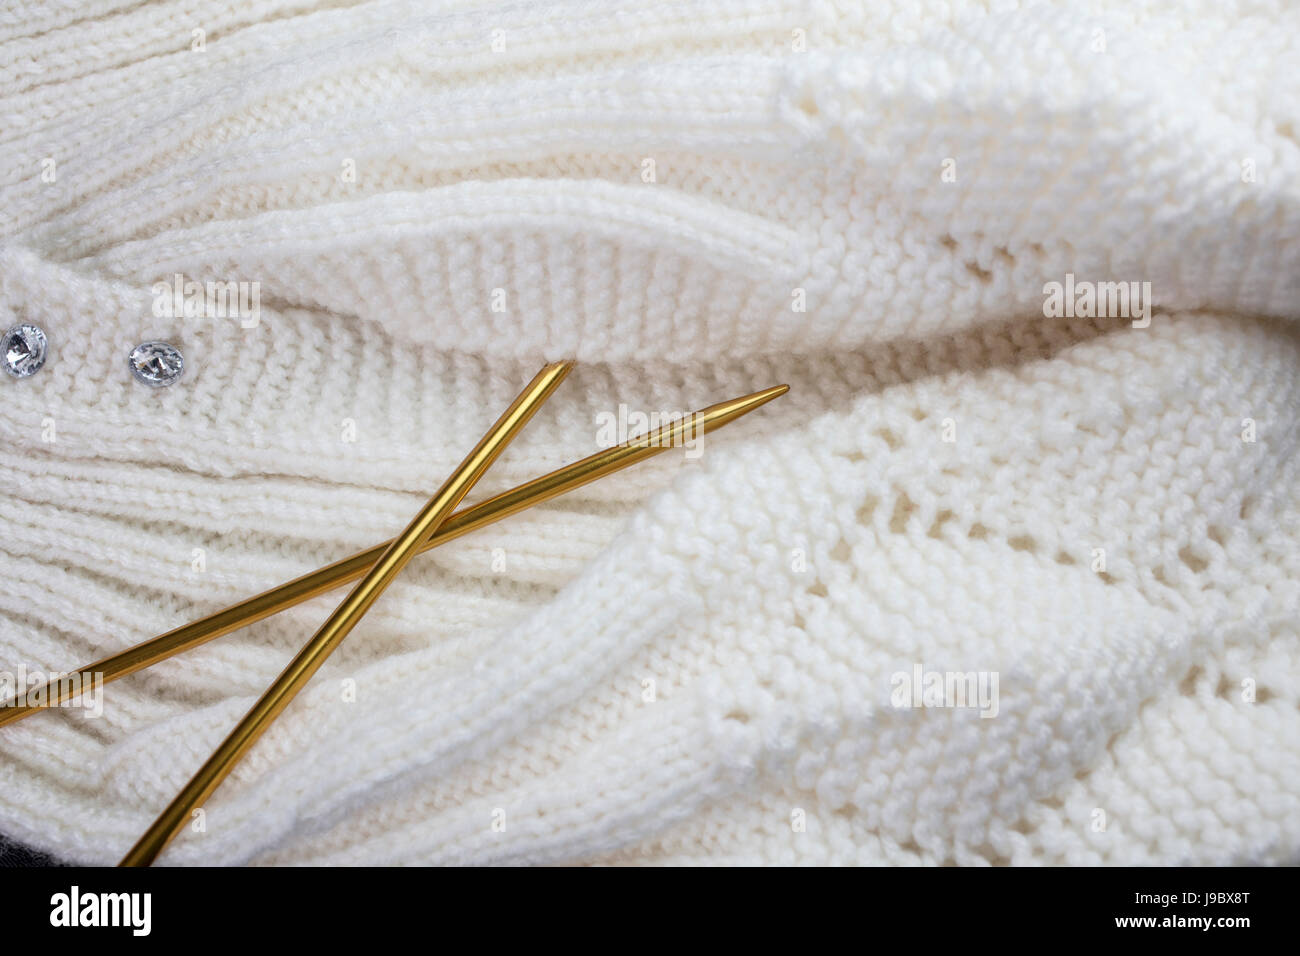 Prenda de punto hilo Blanco con color oro, agujas de tejer Foto de stock